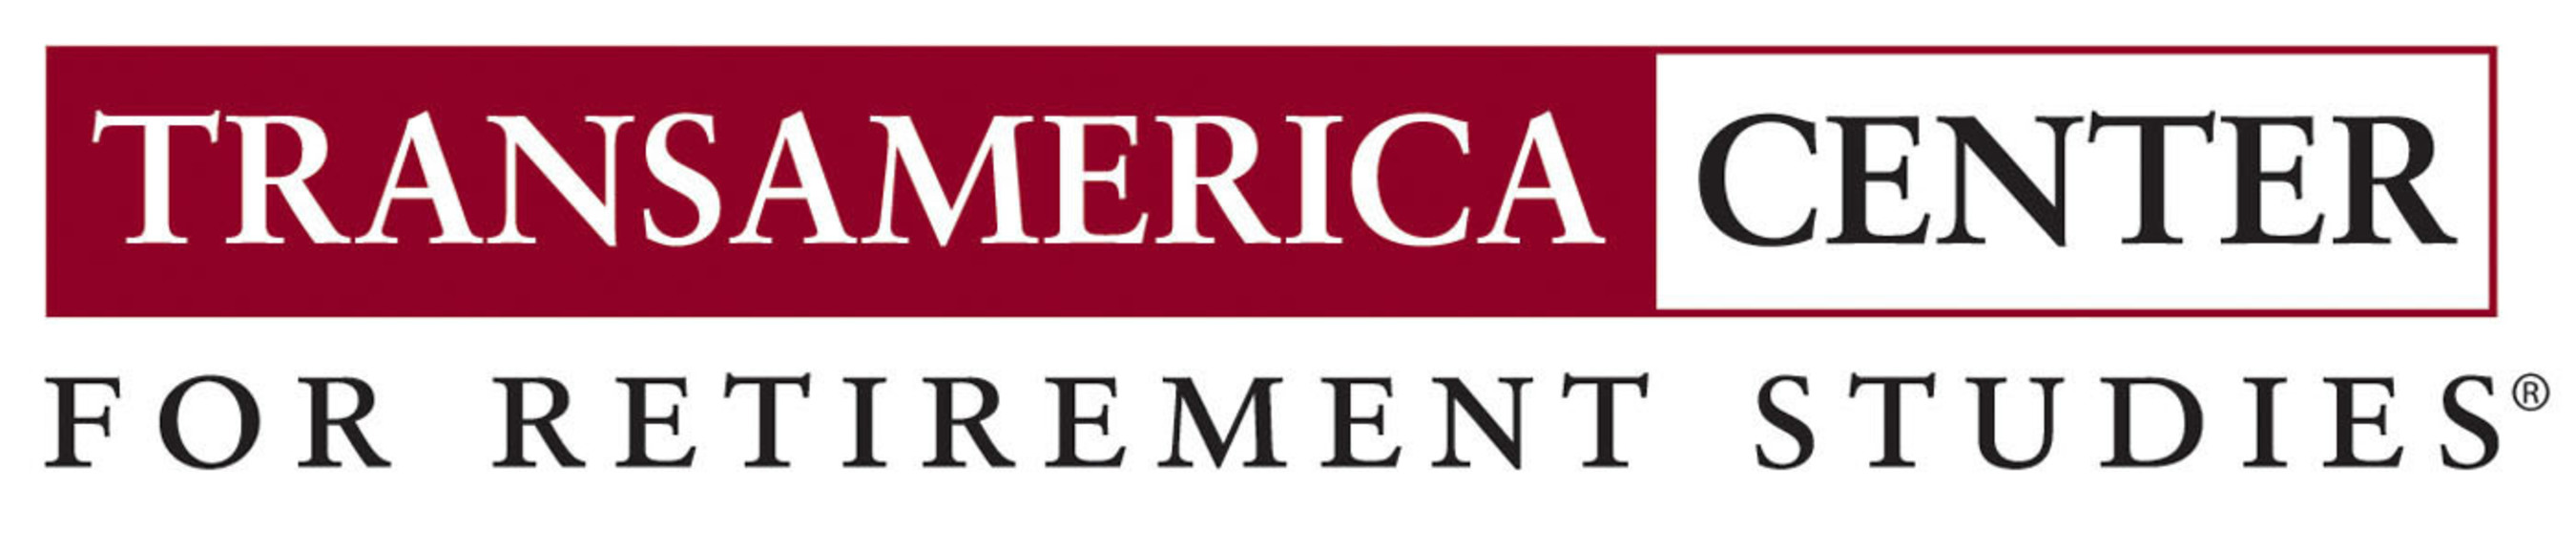 Transamerica Center for Retirement Studies logo. (PRNewsFoto/Transamerica Center for Retirement Studies) (PRNewsFoto/TRANSAMERICA CENTER FOR RET...)